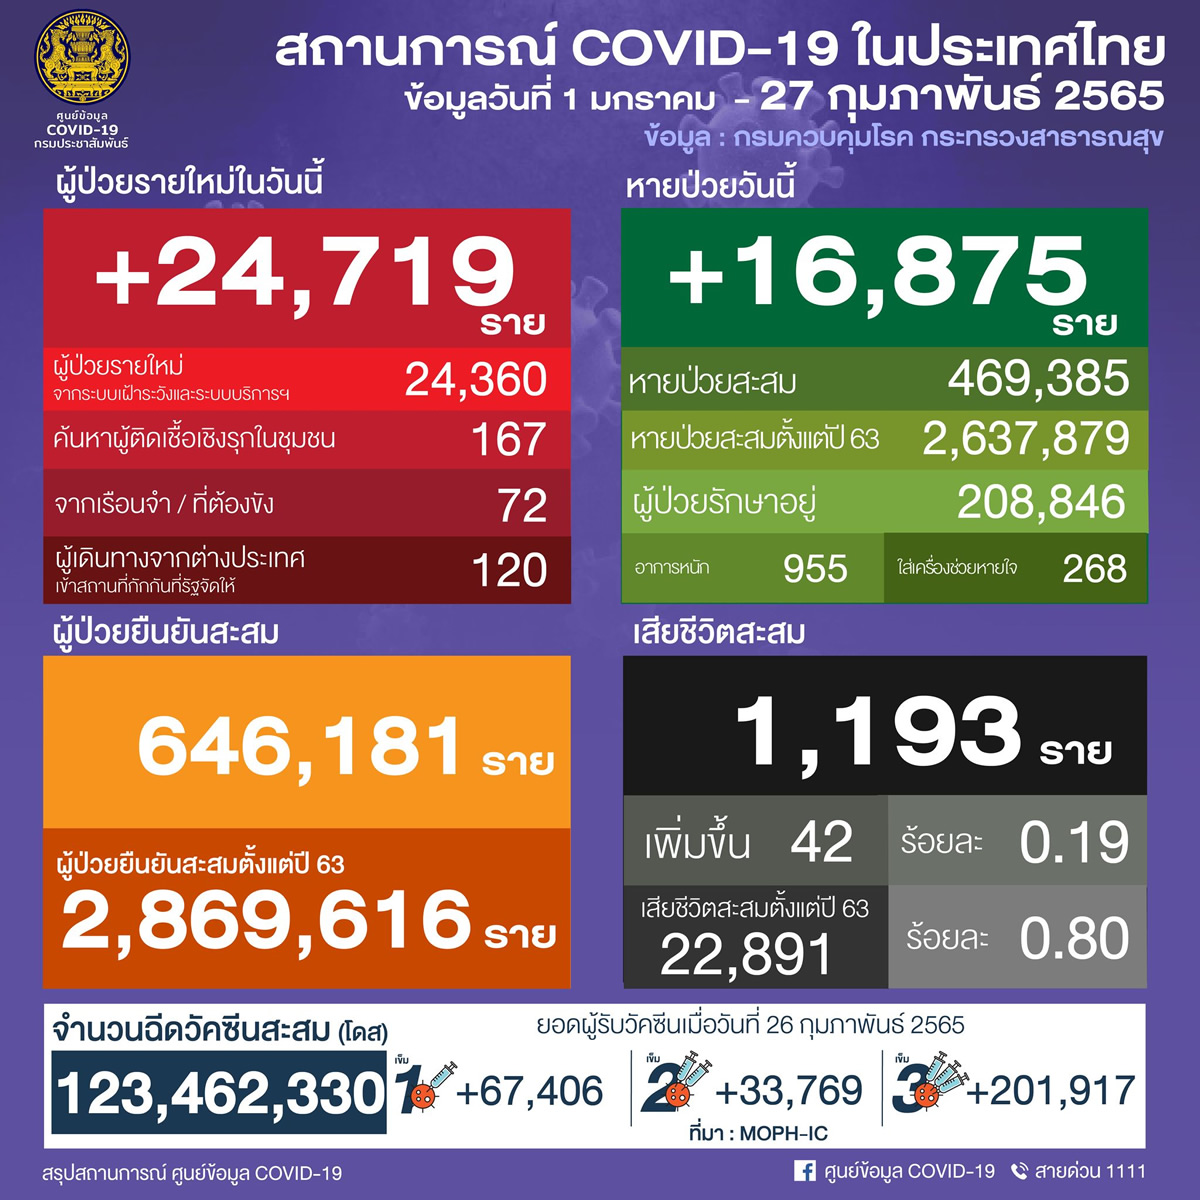 タイ 24,719人陽性 42人死亡／バンコク 2,645人陽性／チョンブリ 1,434人陽性／サムットプラカーン 1,068人陽性［2022年2月27日発表］